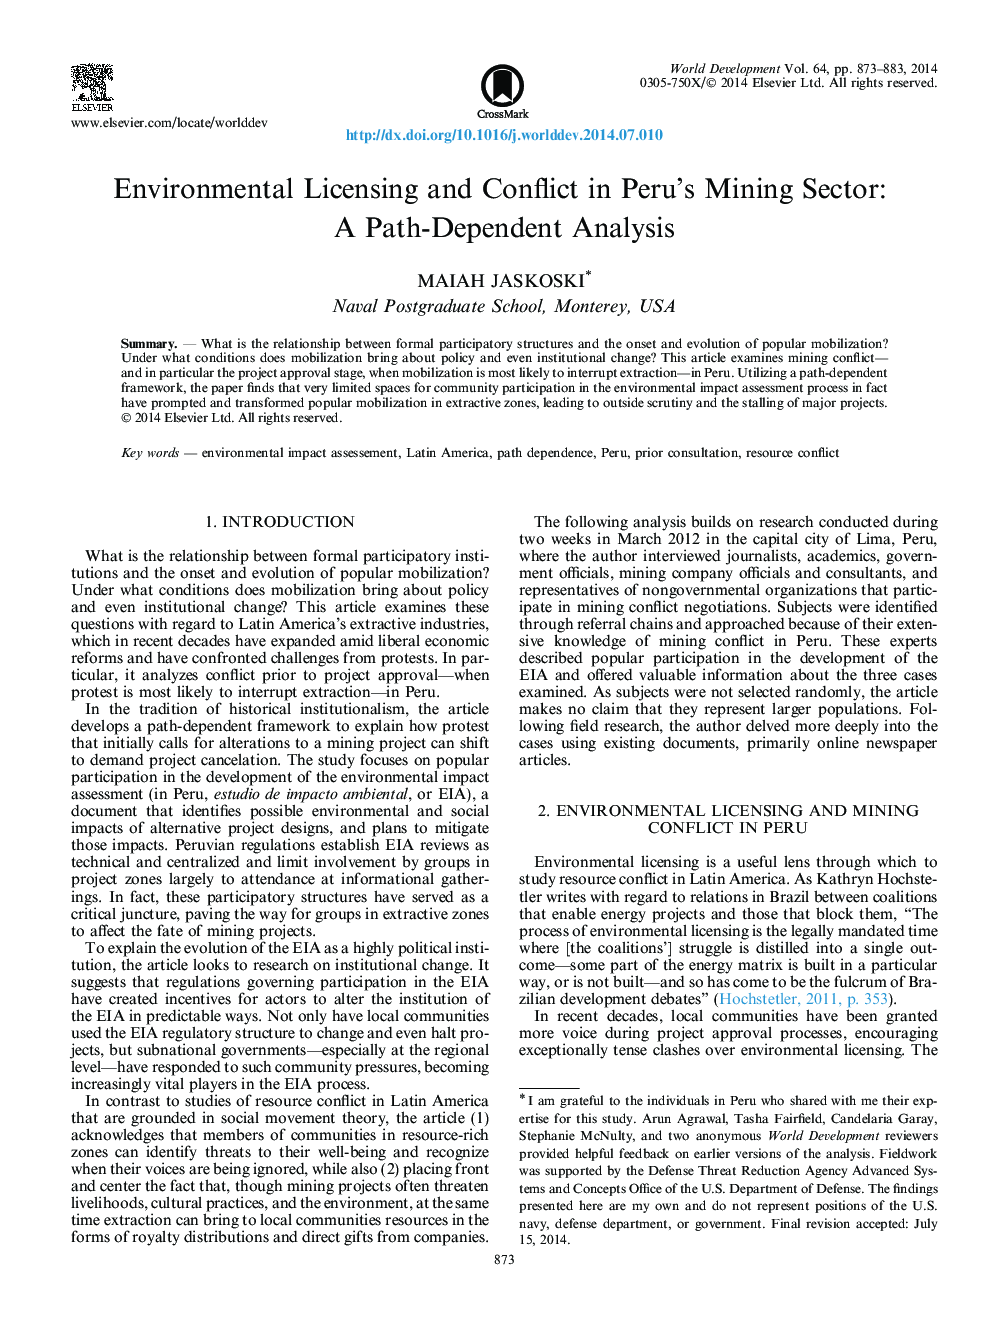 مجوز محیط زیست و مناقشات در بخش معدن پرو: یک تحلیل وابسته به مسیر 